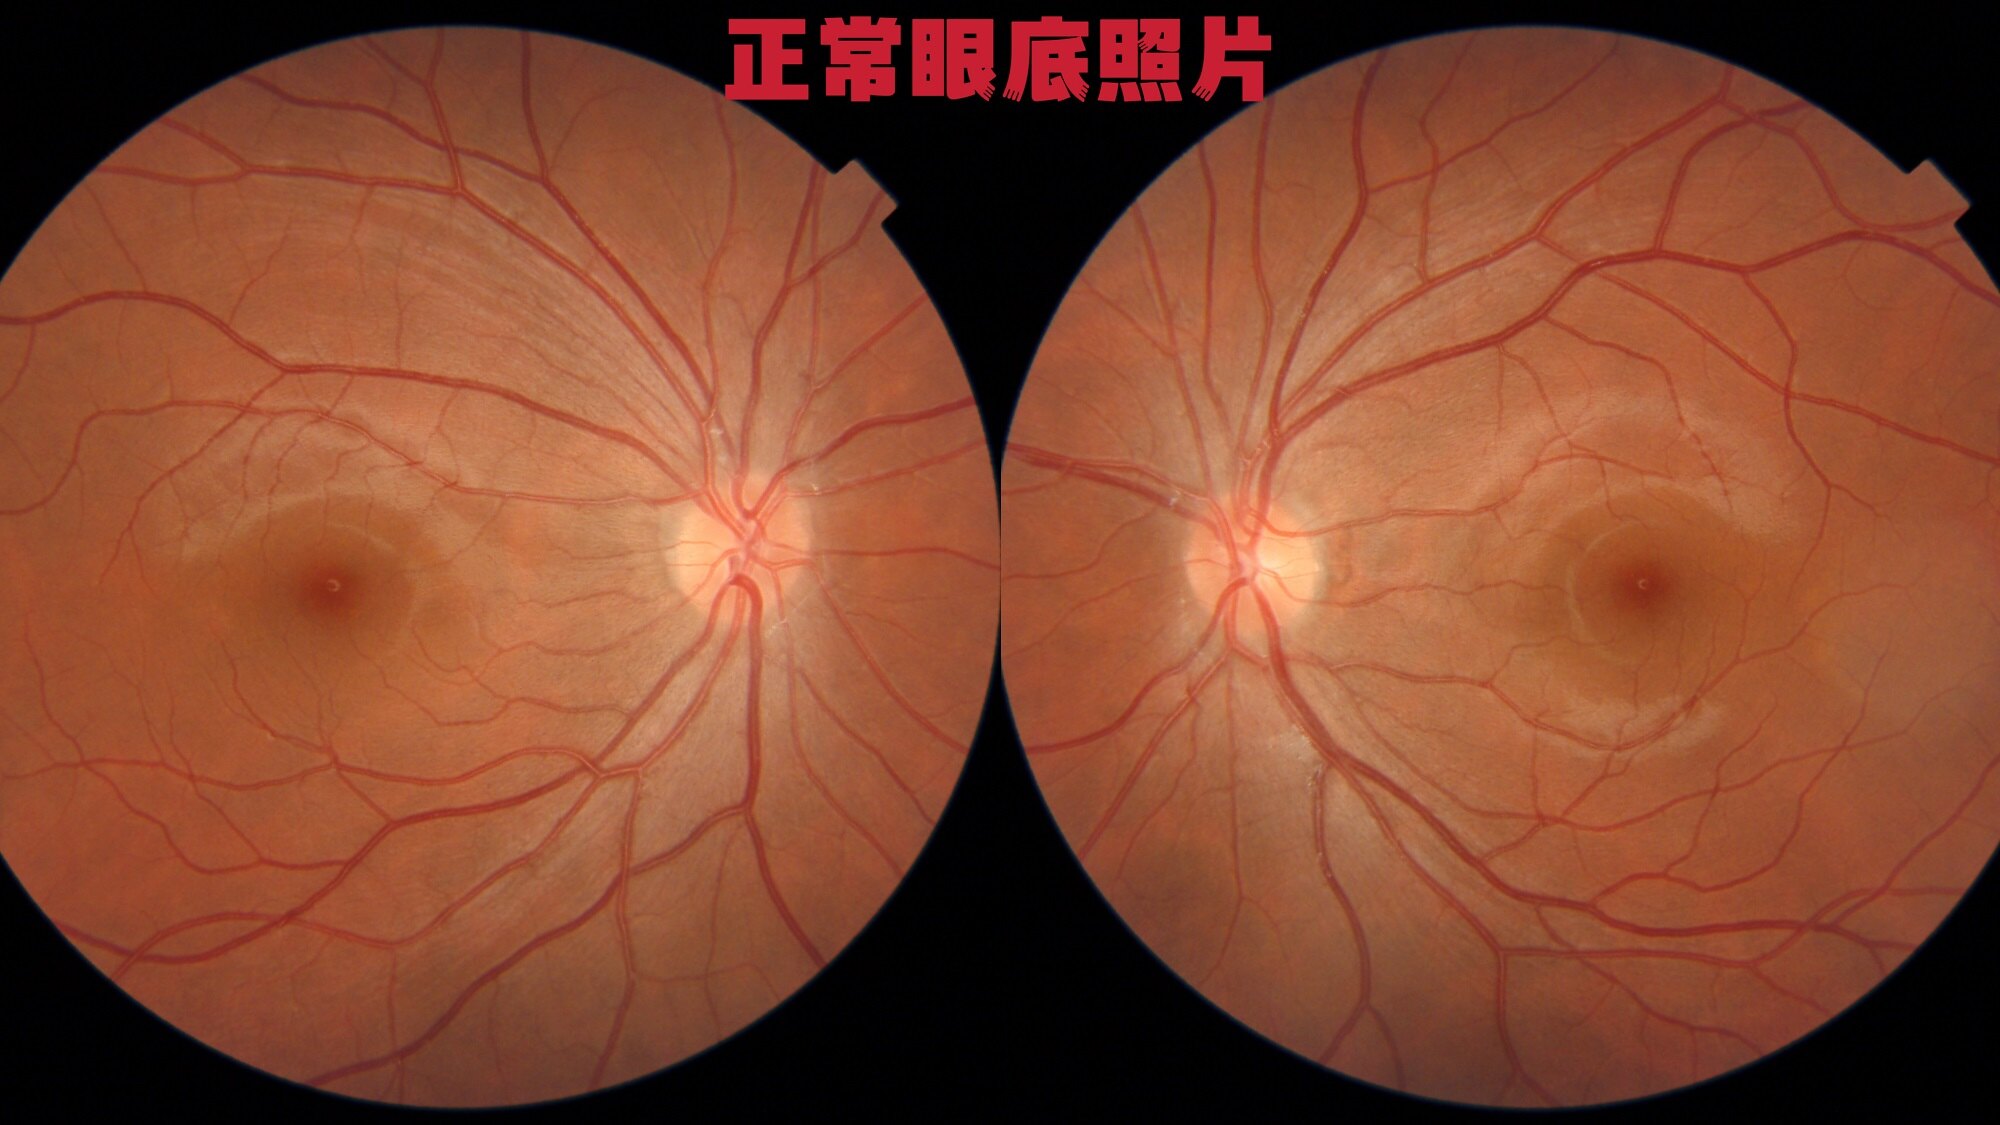 糖尿病视网膜病变是成人首位致盲性眼病,该如何早防早控免失明